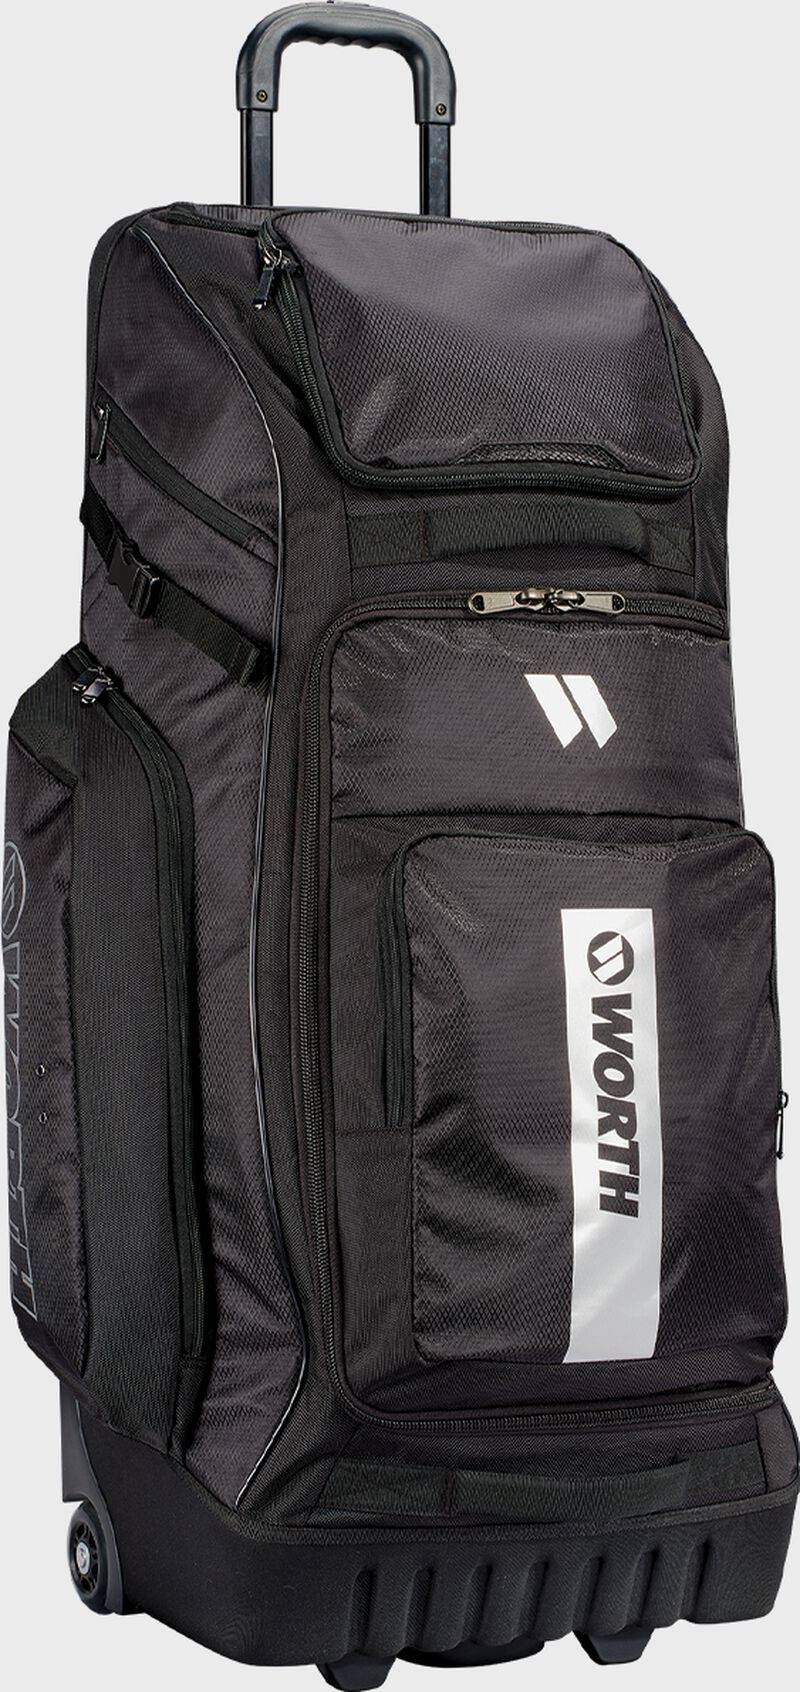 WBA005 Worth Pro Wheeled Slowpitch Bag Black